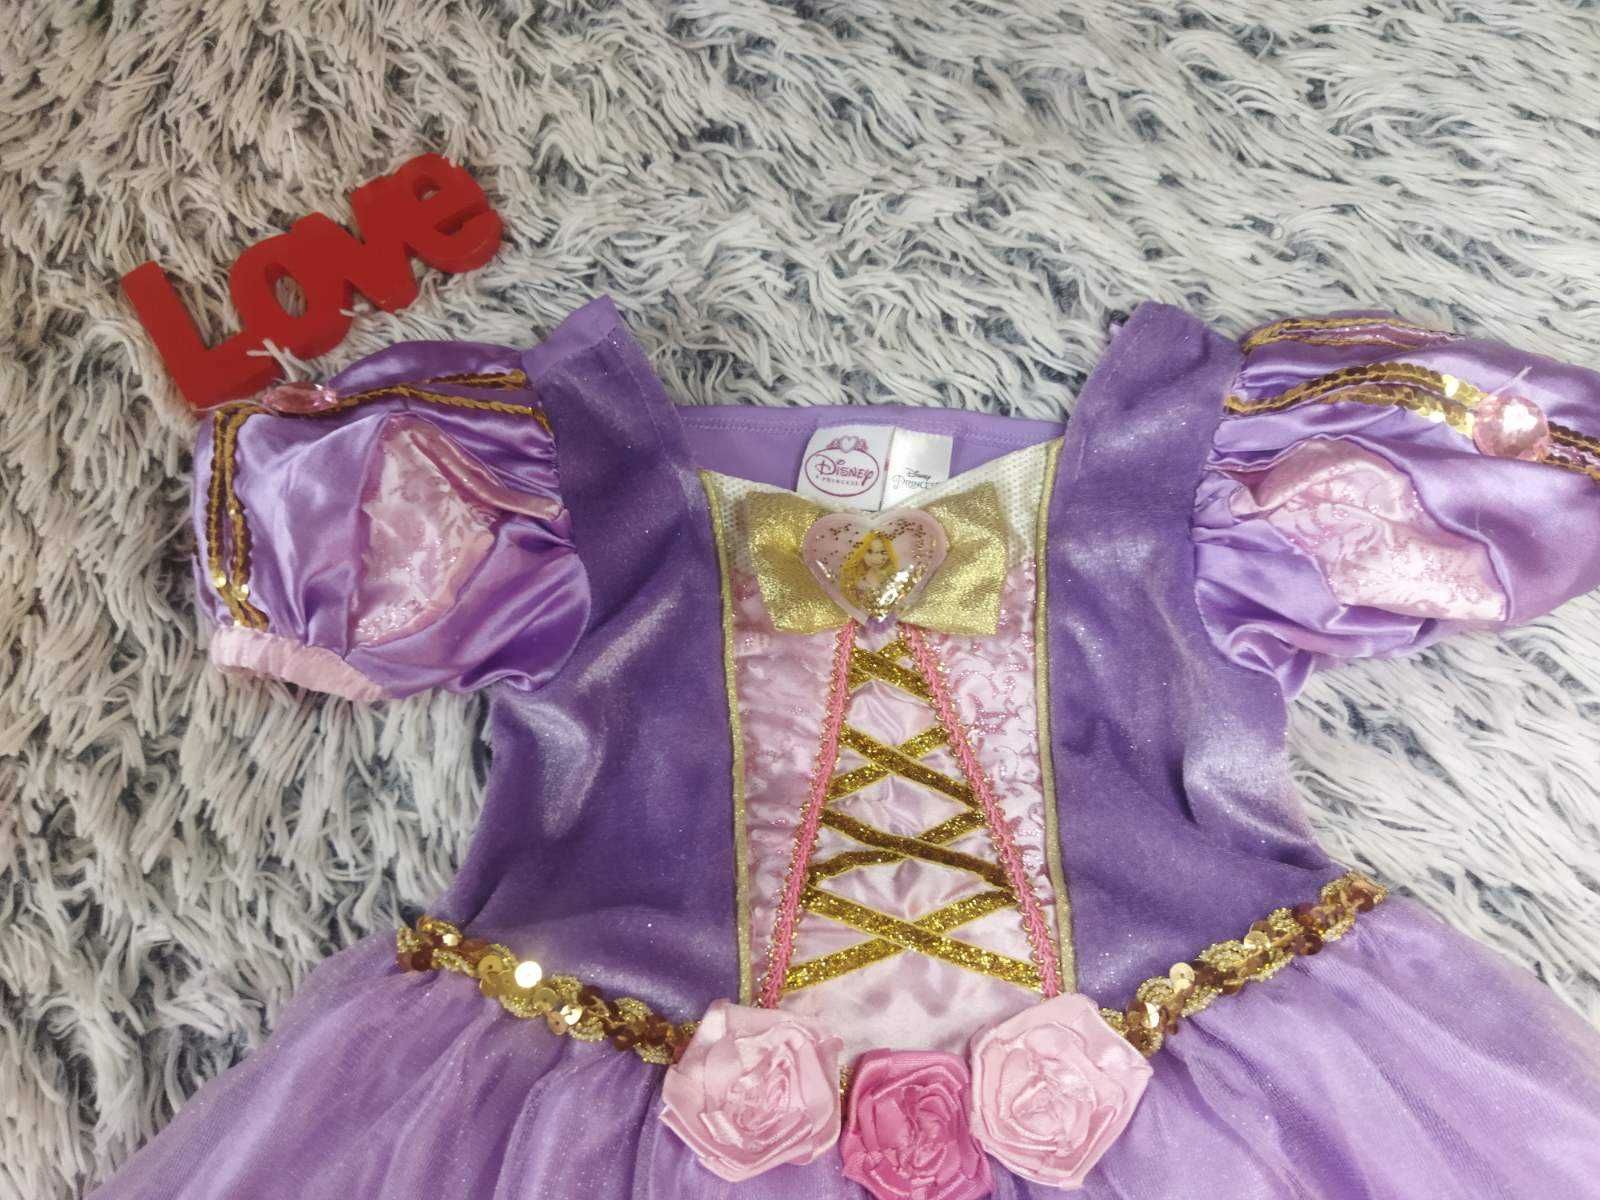 Детский карнавальный костюм Рапунцель,Дисней,платье,Rapunzel